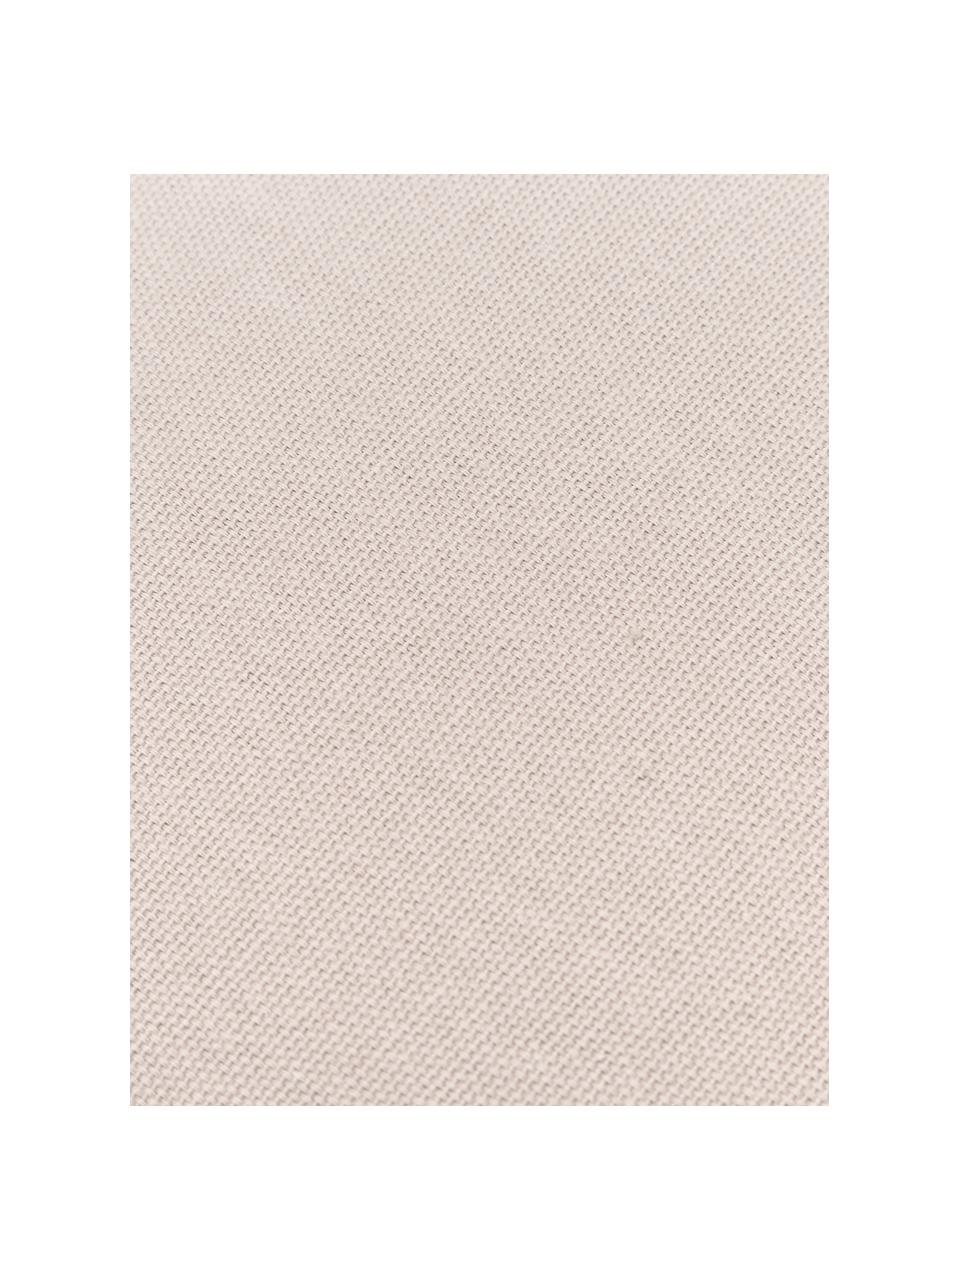 Kissenhülle Shylo in Beige mit Quasten, 100% Baumwolle, Beige, B 40 x L 40 cm